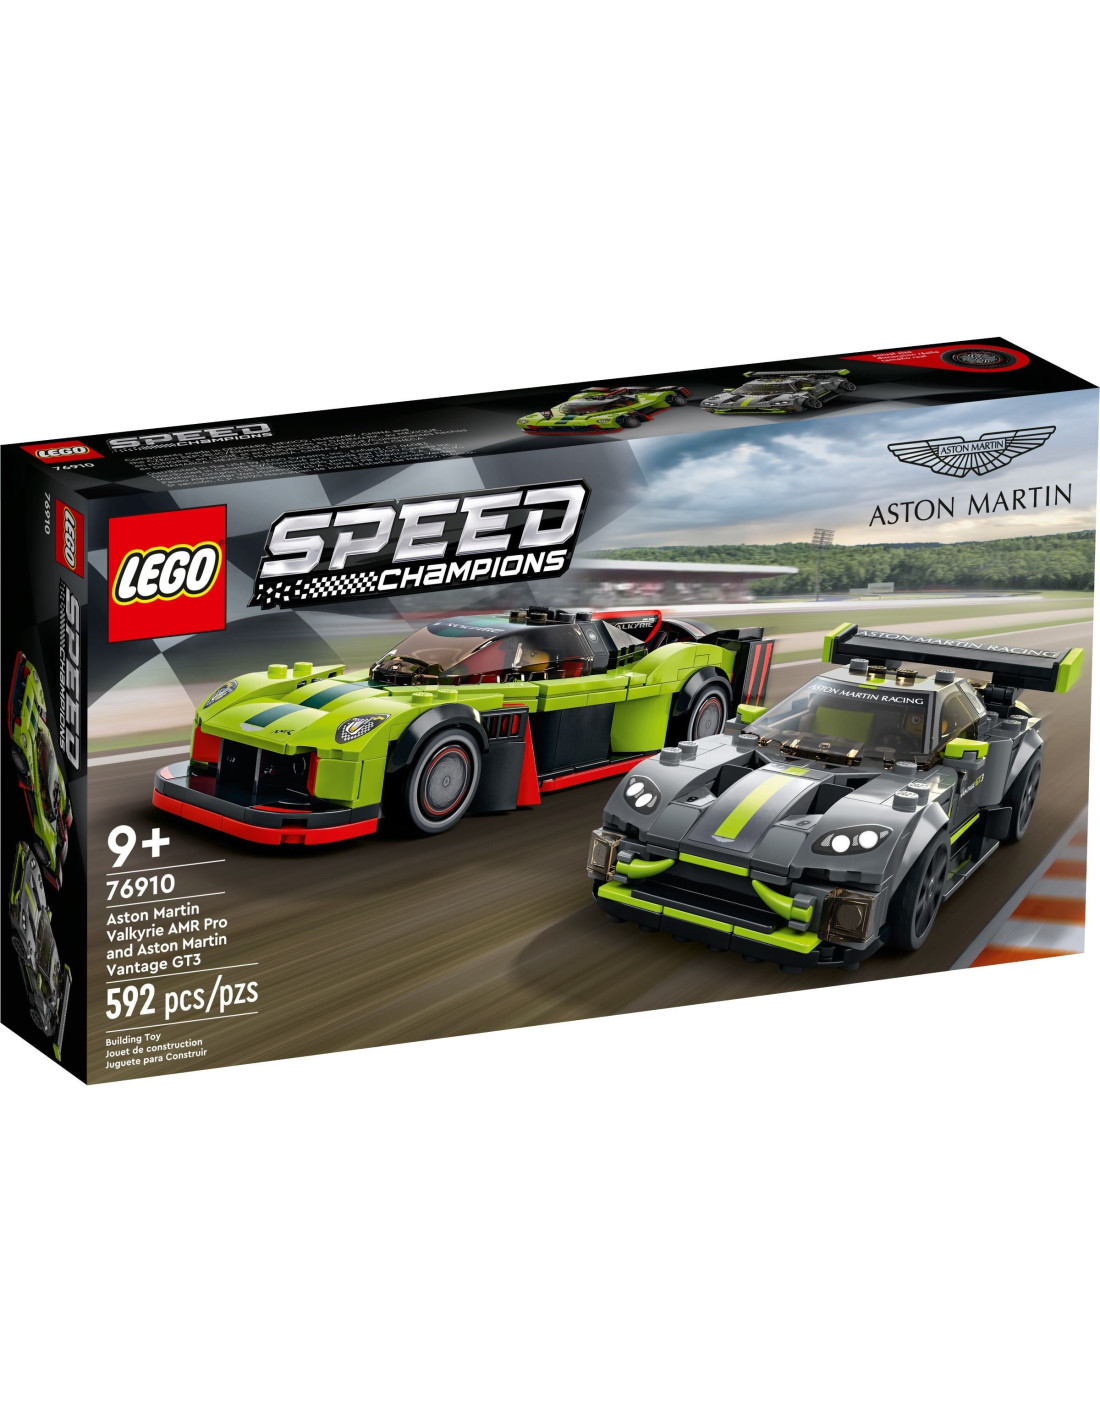 LEGO 76910 Aston Martin Valkyrie AMR Pro and Aston Martin Vantage